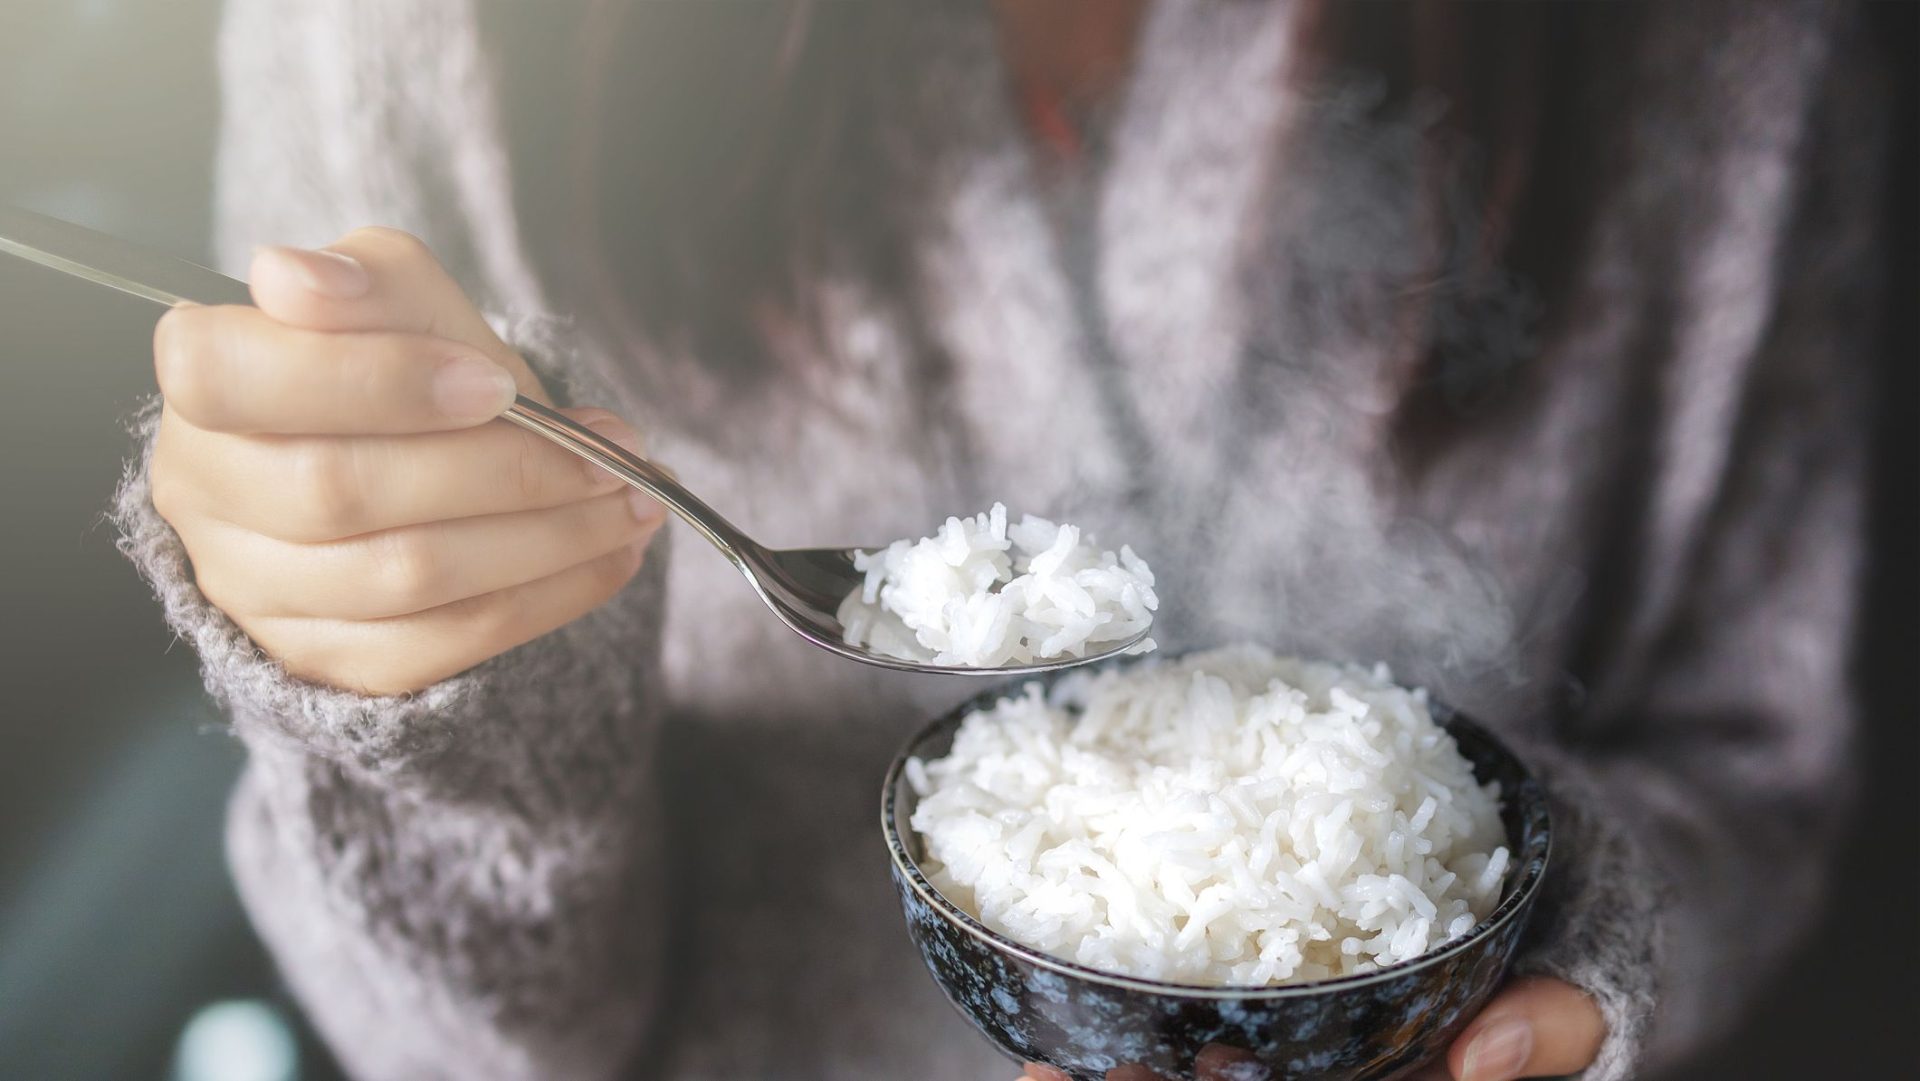 نقص الأرز في الأسواق التونسية يضاعف معاناة أكثر من 100 ألف مريض بحساسية الجلوتين